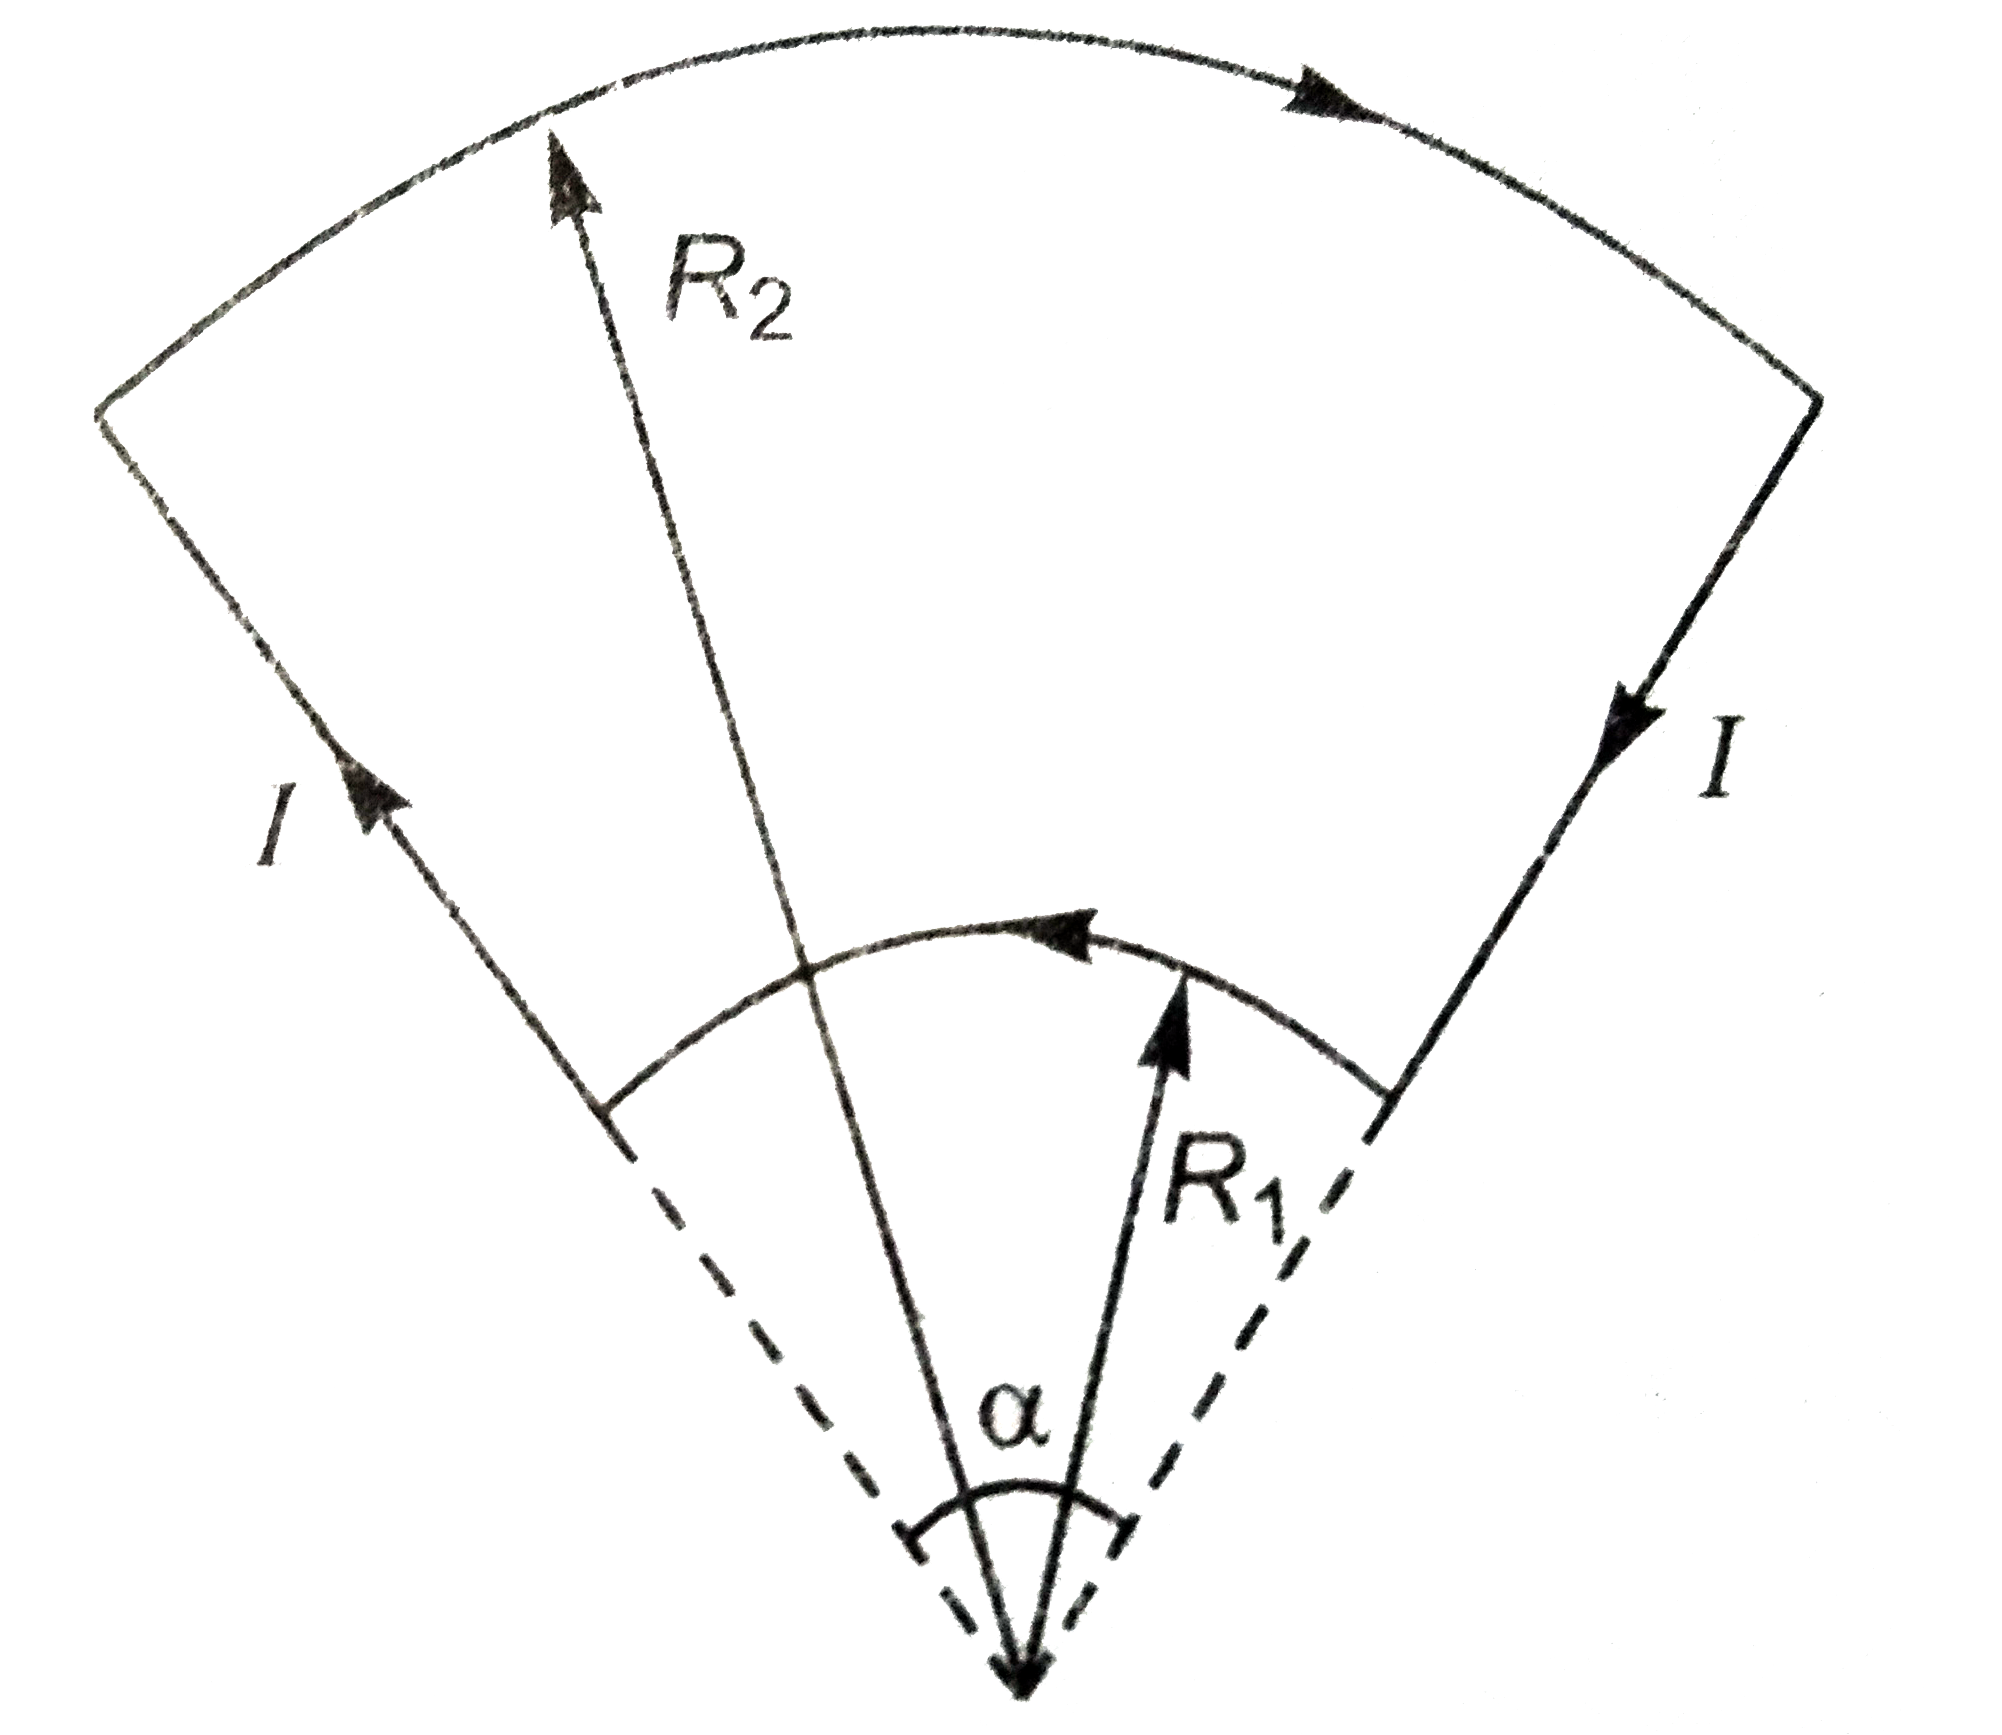 संलगन चित्र में प्रदर्शित मुड़े तार में I एम्पेयर धारा हैं। केंद्र O  पर चुंबकीय क्षेत्र का मान व दिशा ज्ञात कीजिये।